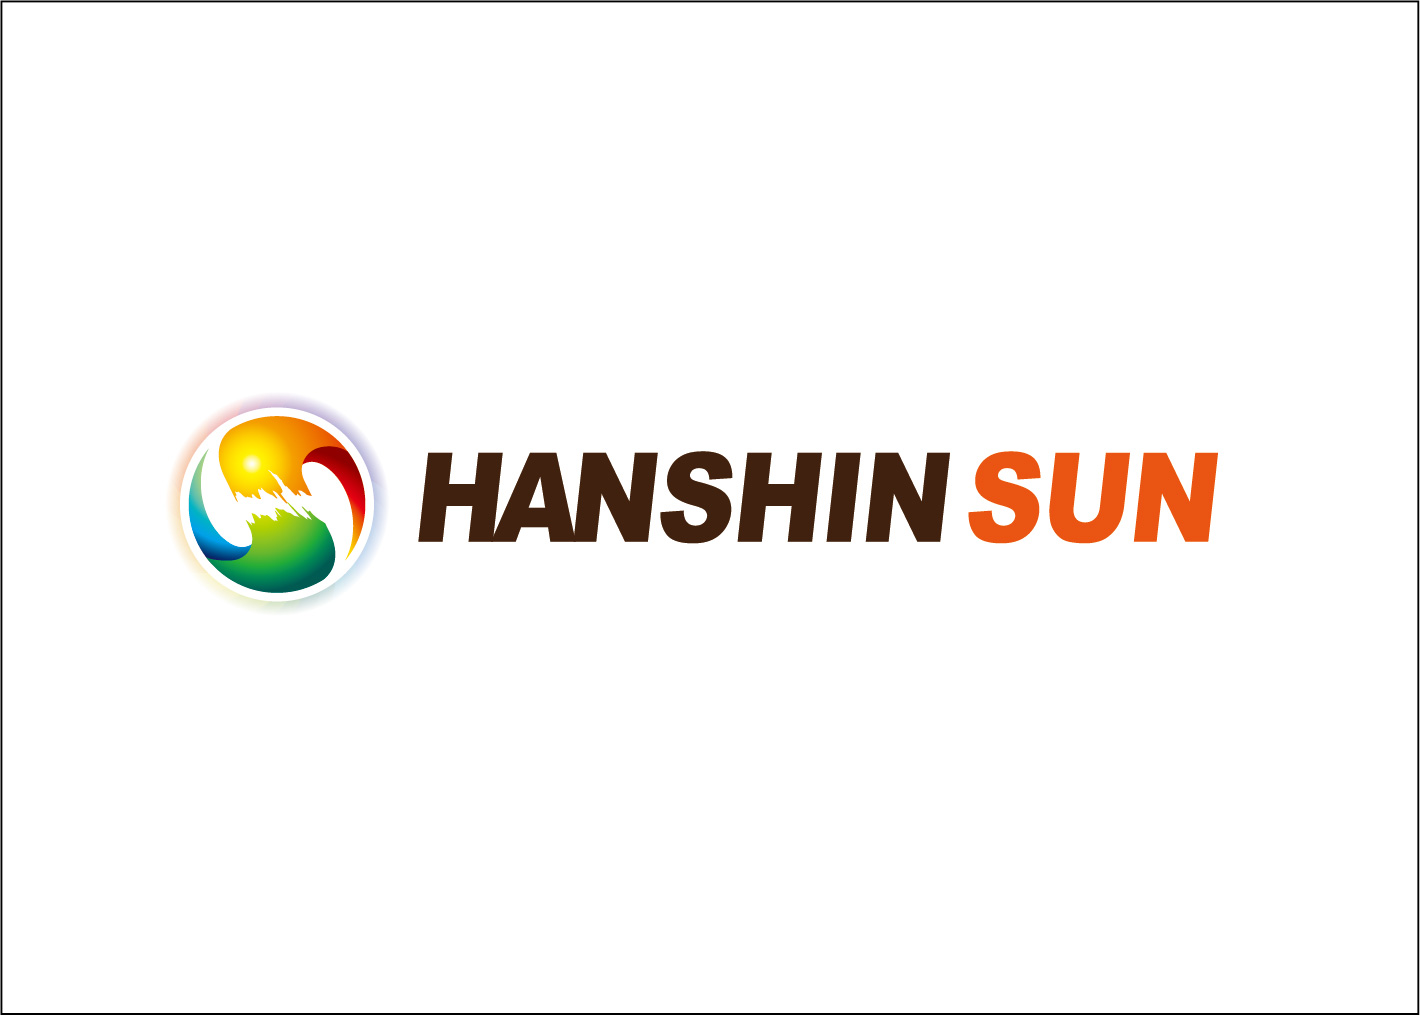 hanshinsun_logo01